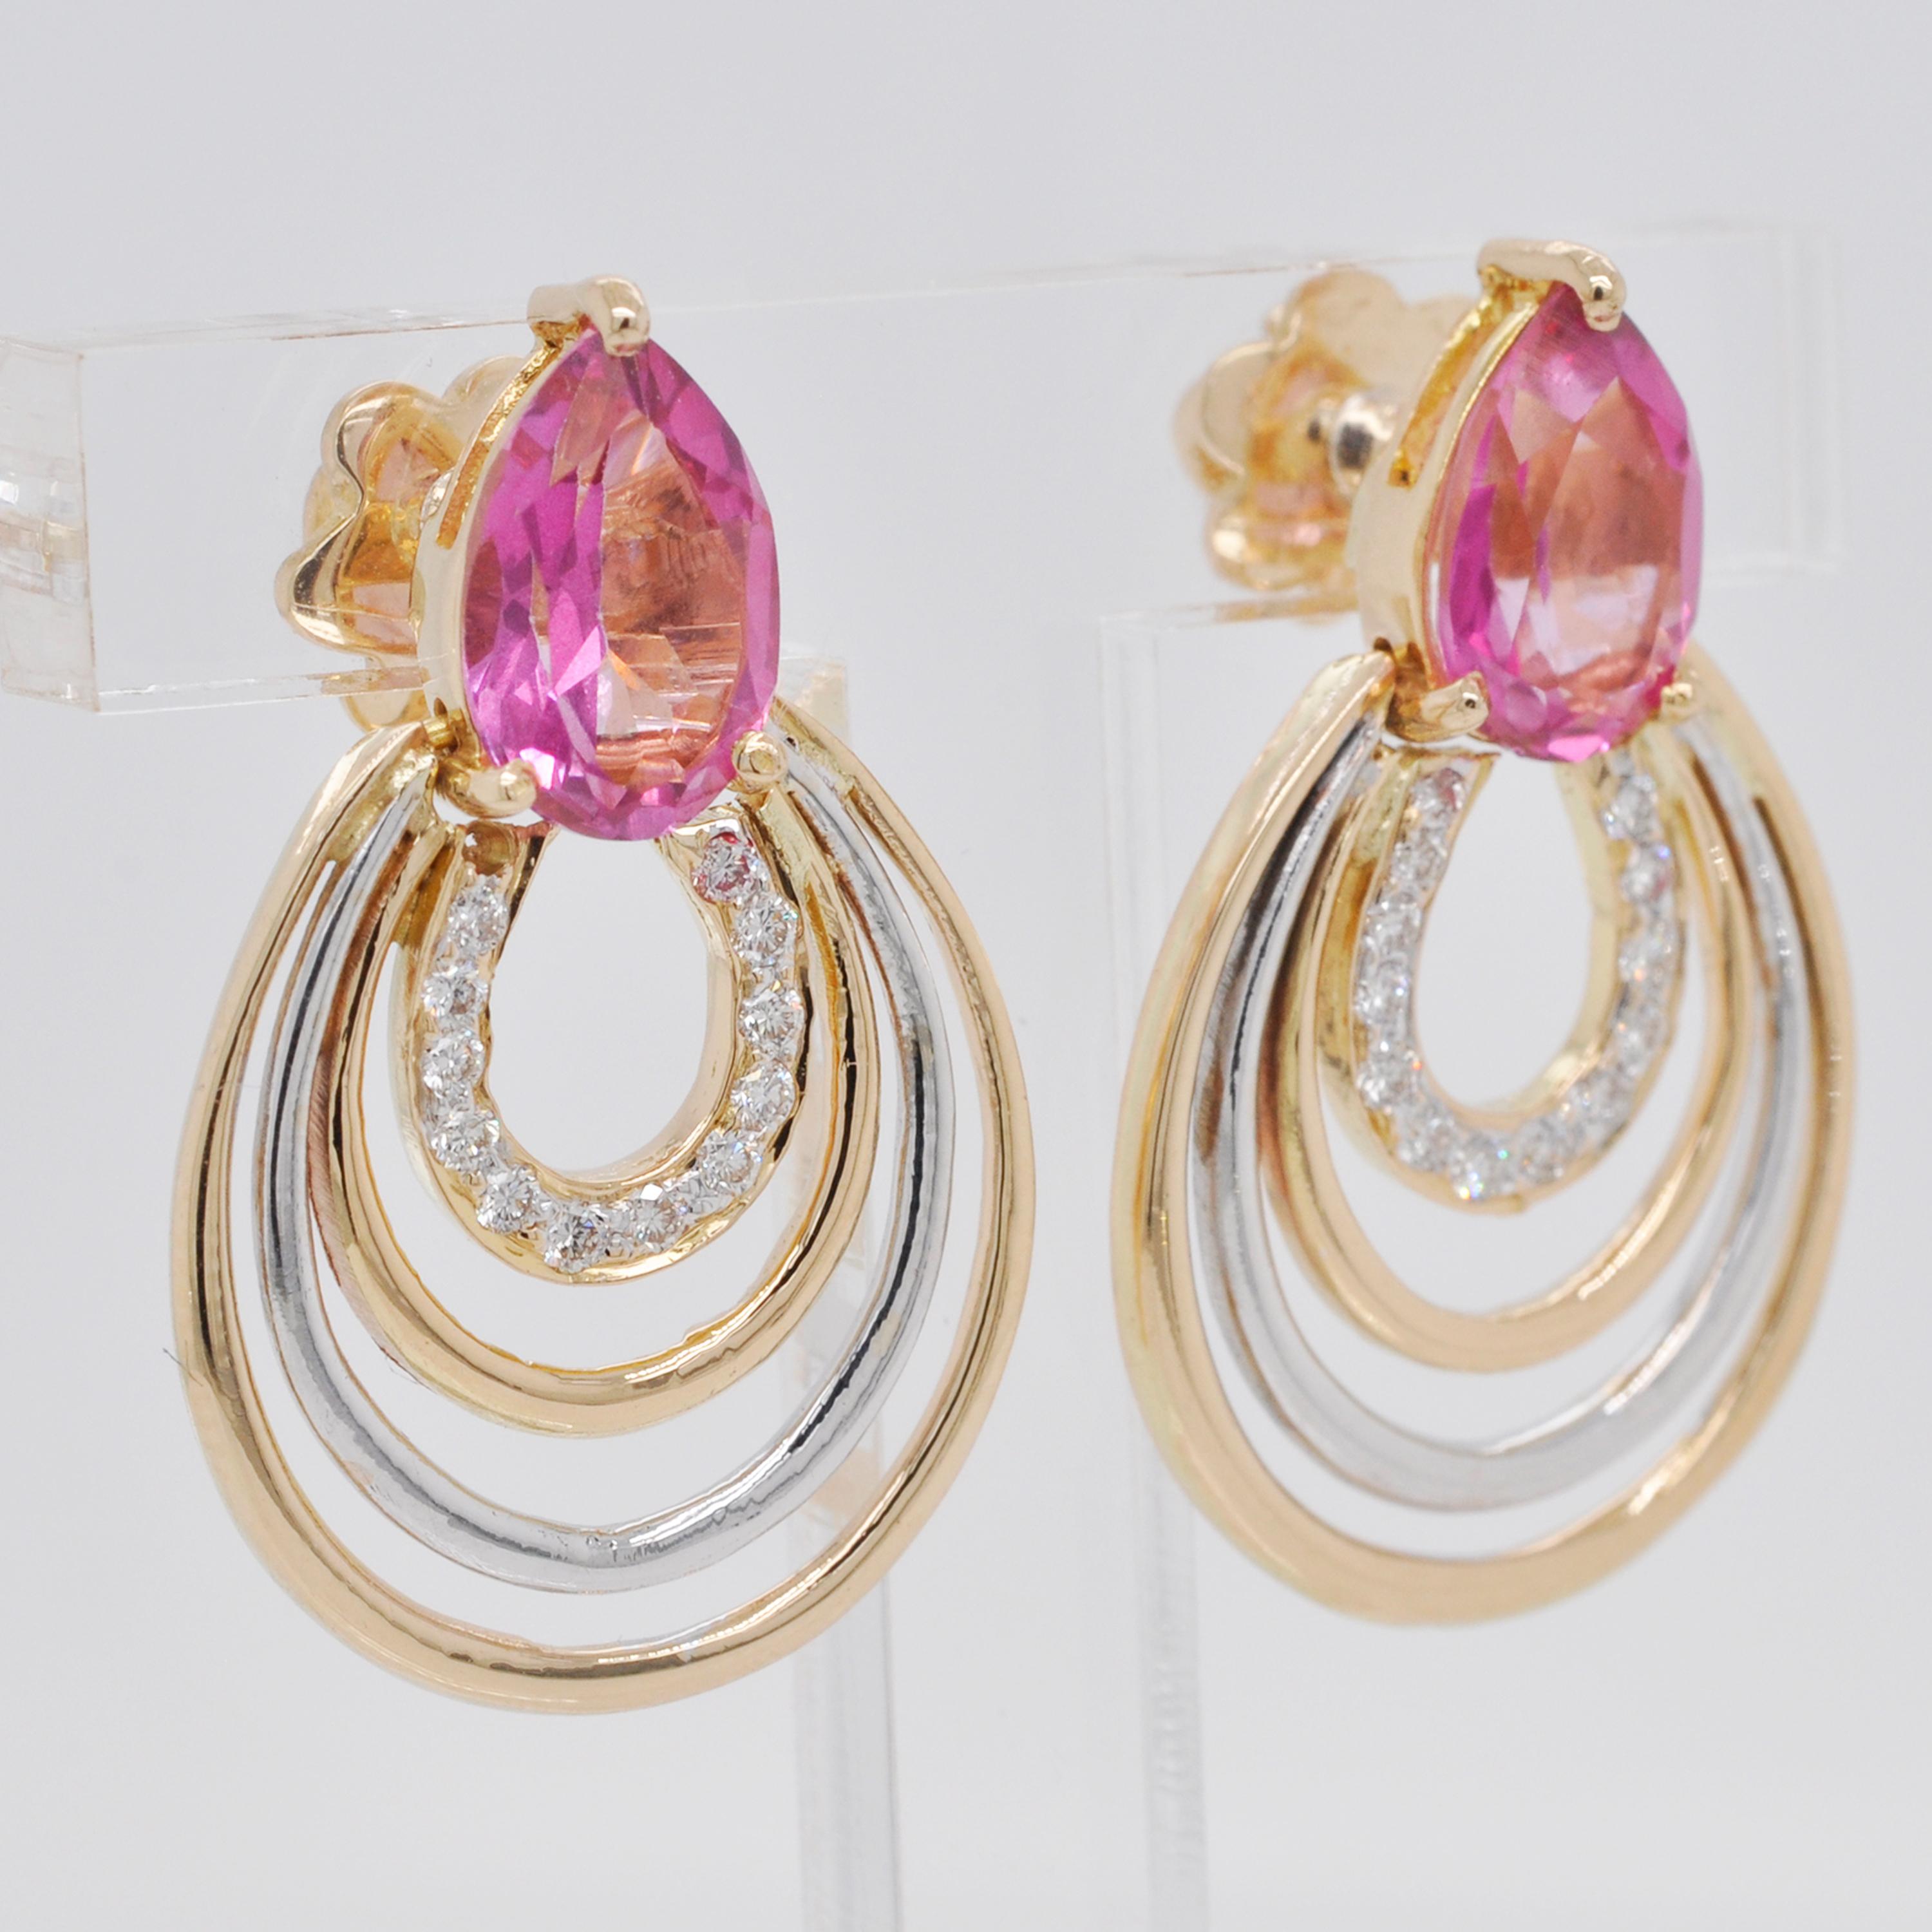 18 Karat Gelbgold birnenförmige rosa Turmalin-Diamant-Tropfenohrringe

Dieses Paar Ohrringe aus 18 Karat Gold ist äußerst elegant und stilvoll. Ein glänzender birnenförmiger rosafarbener Turmalin an der Oberseite und eine birnenförmige